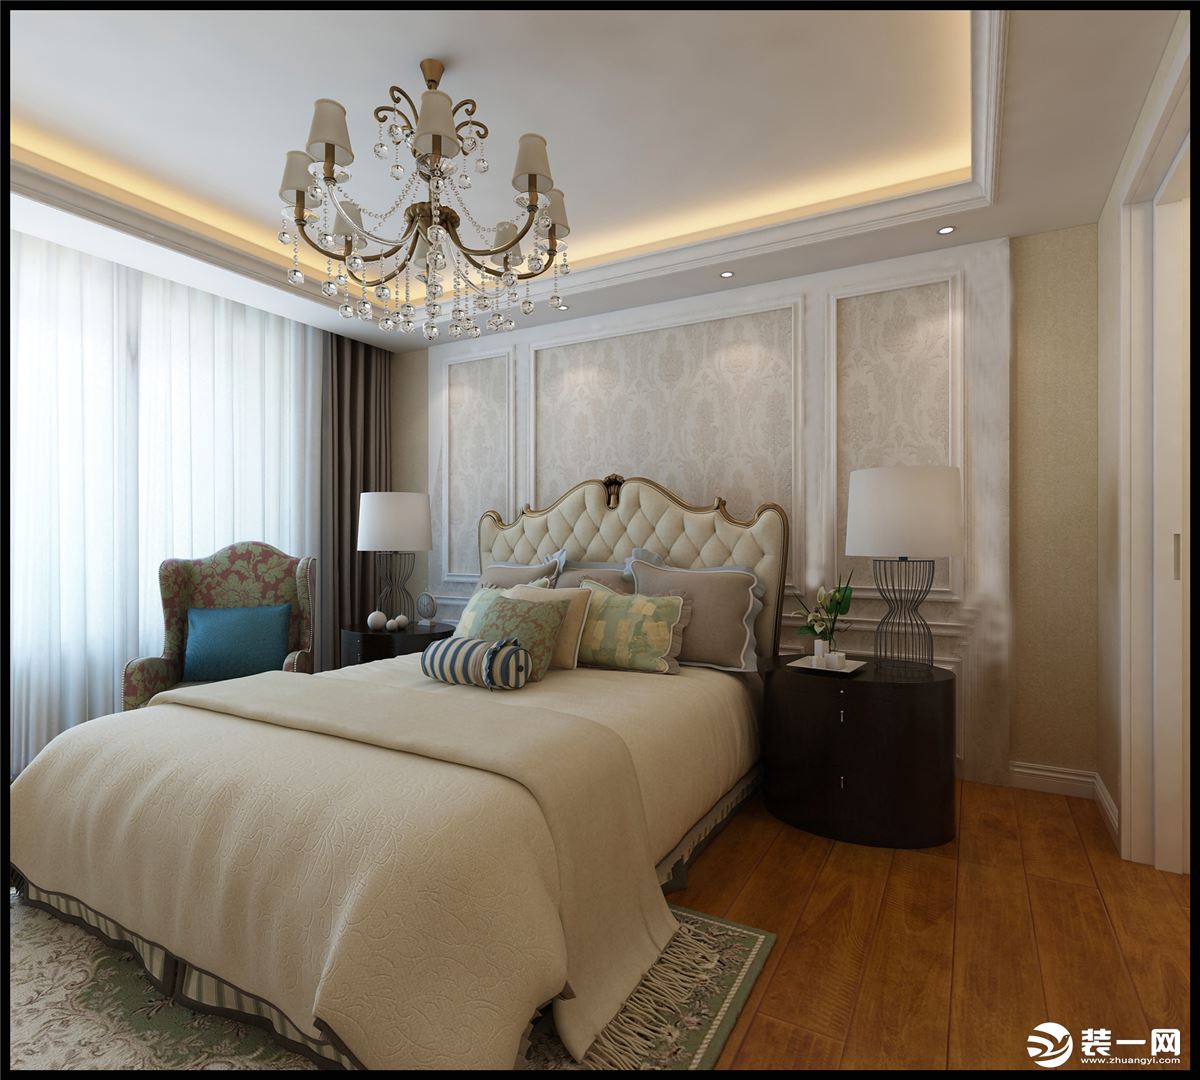 卧室作为休息的空间，舒适度为首要考虑，简洁大气，没有做繁杂的造型，整体搭配沉稳大气。